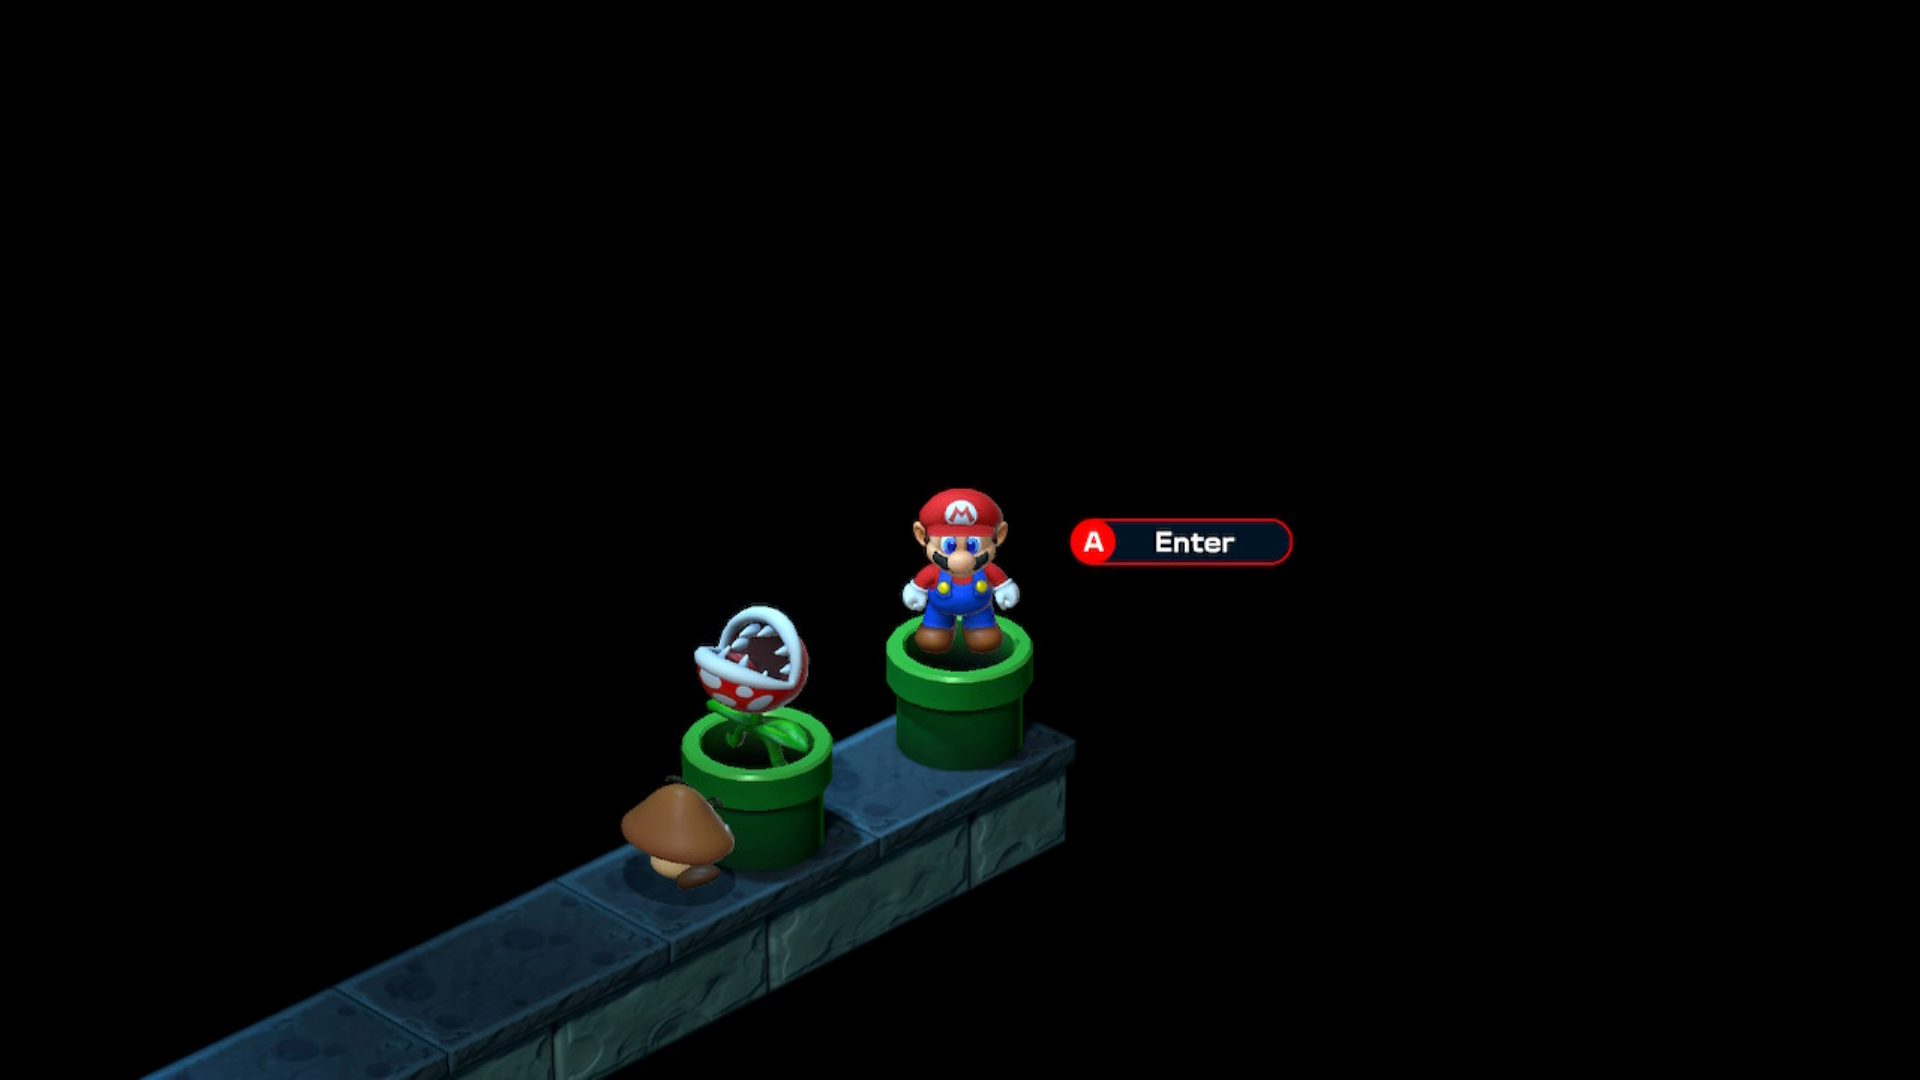 Super Mario RPG Pipe Vault